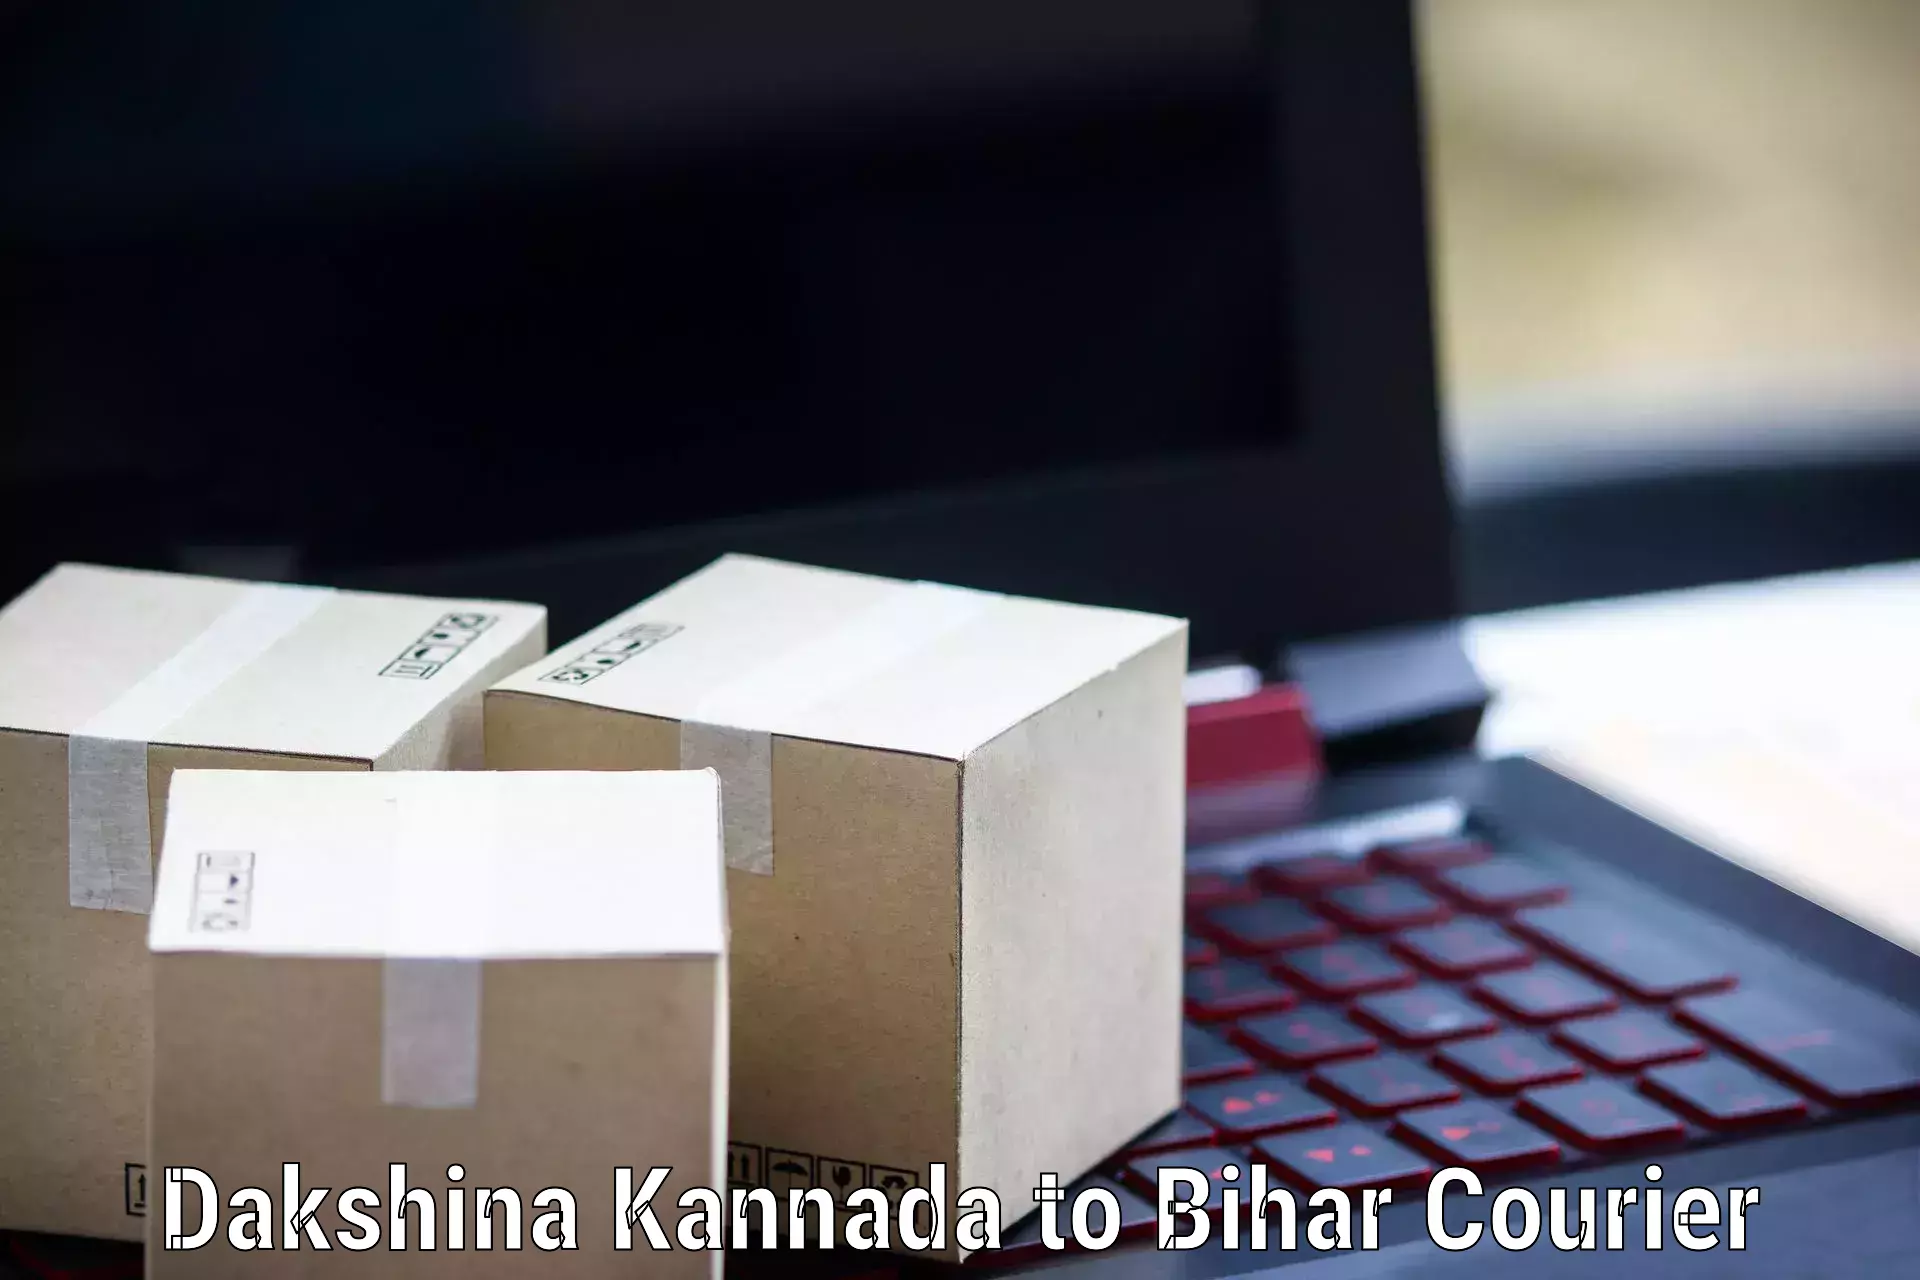 Trackable shipping service Dakshina Kannada to Sheohar